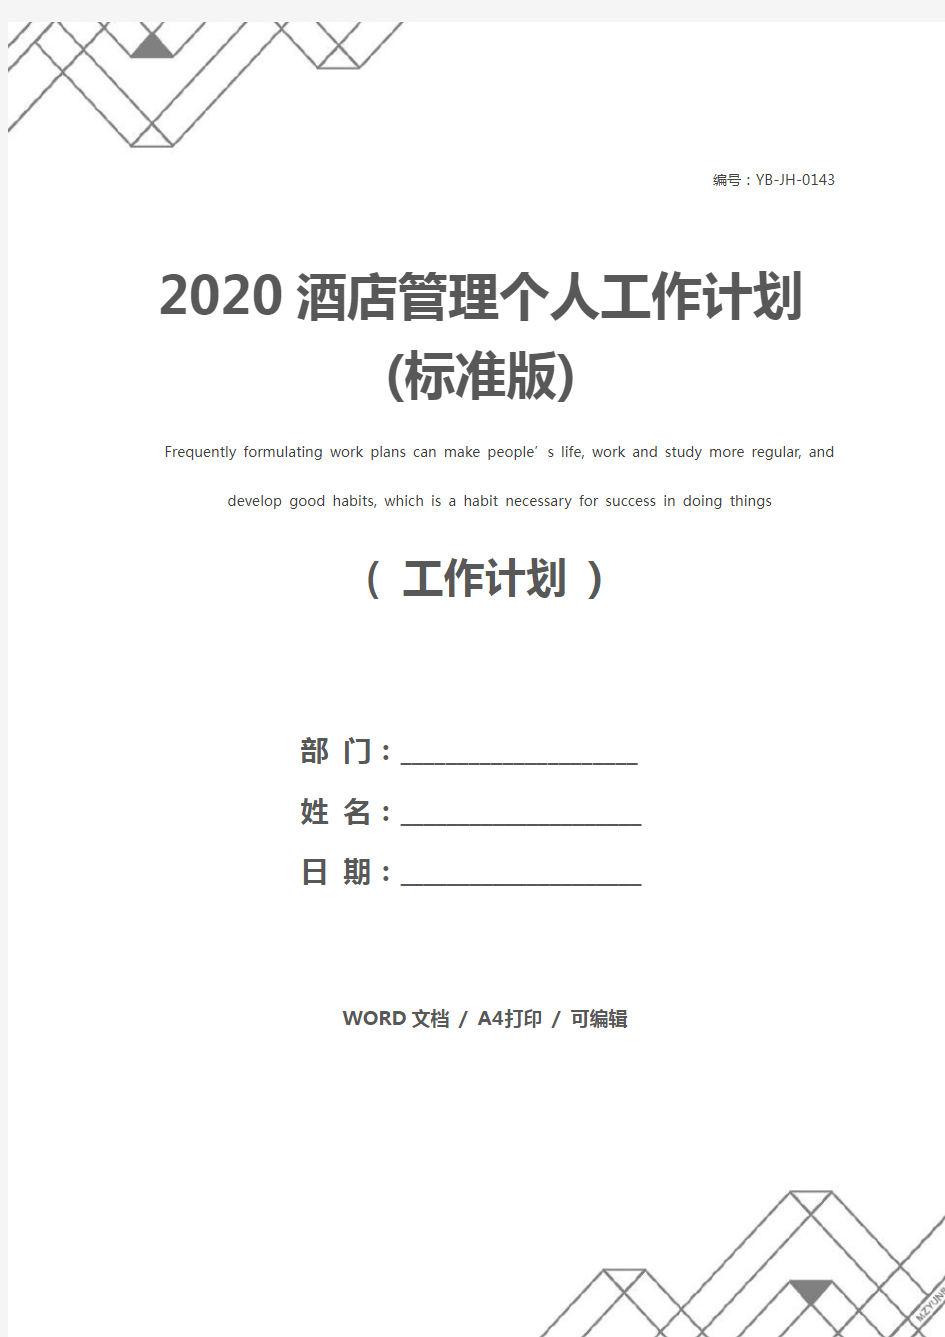 2020酒店管理个人工作计划(标准版)